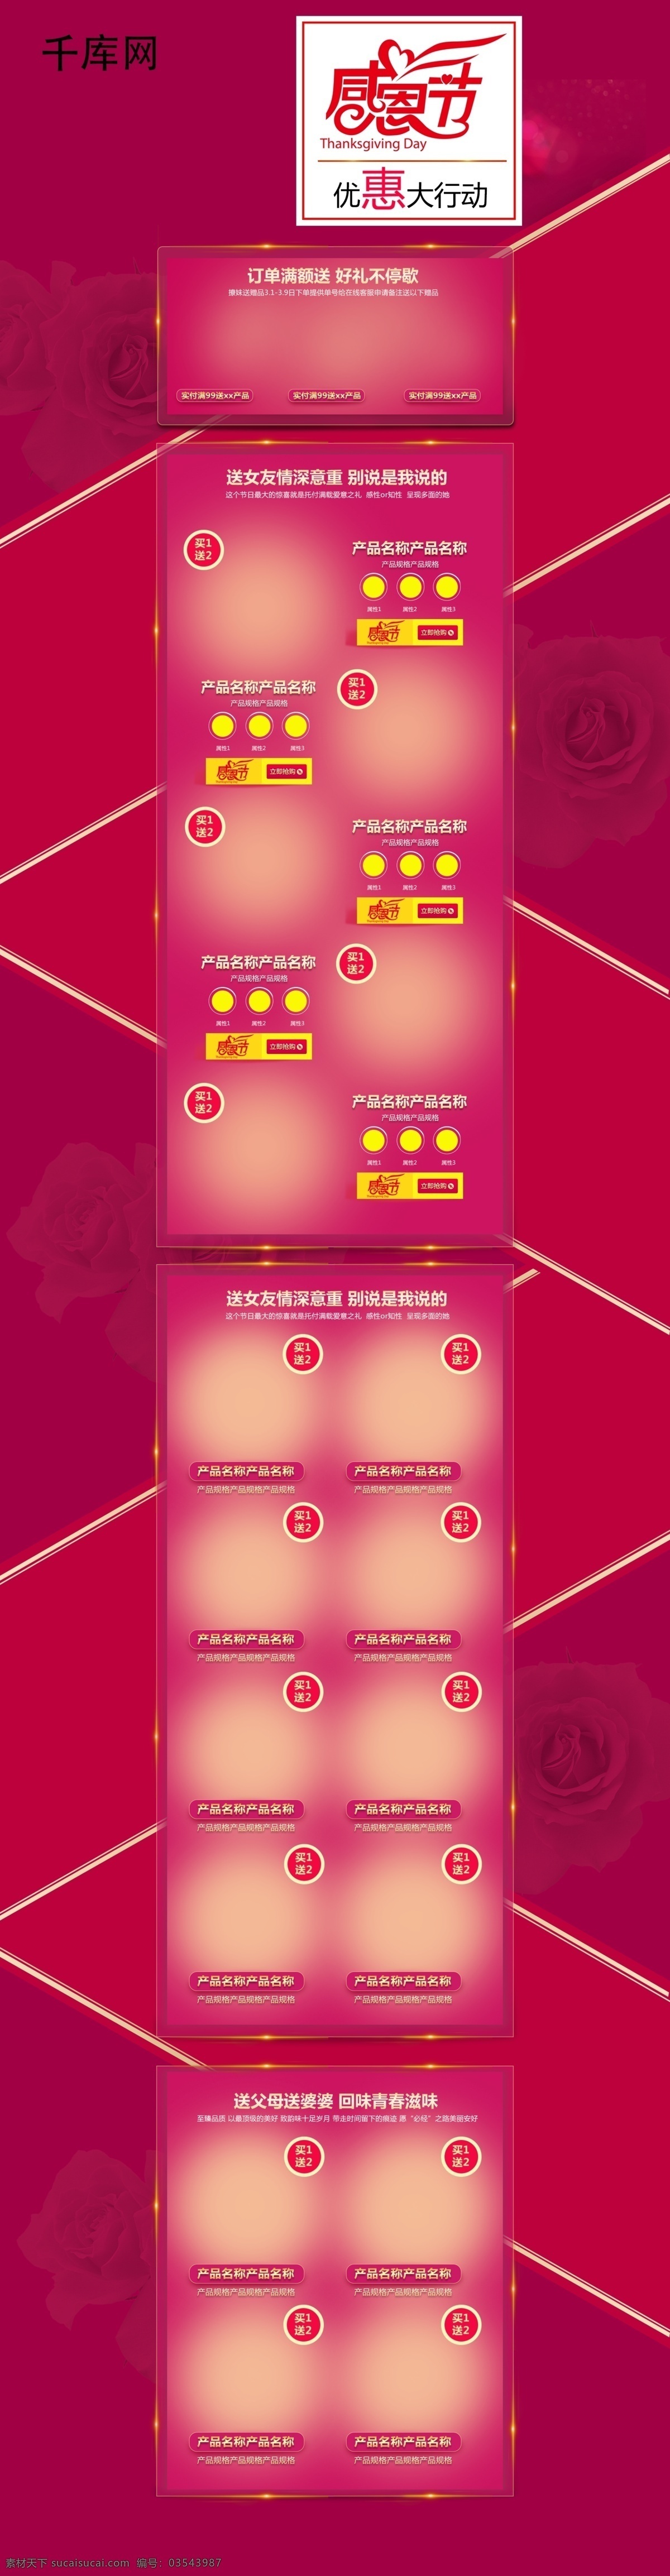 红色 淘宝 天猫 感恩节 首页 首页模板 模板